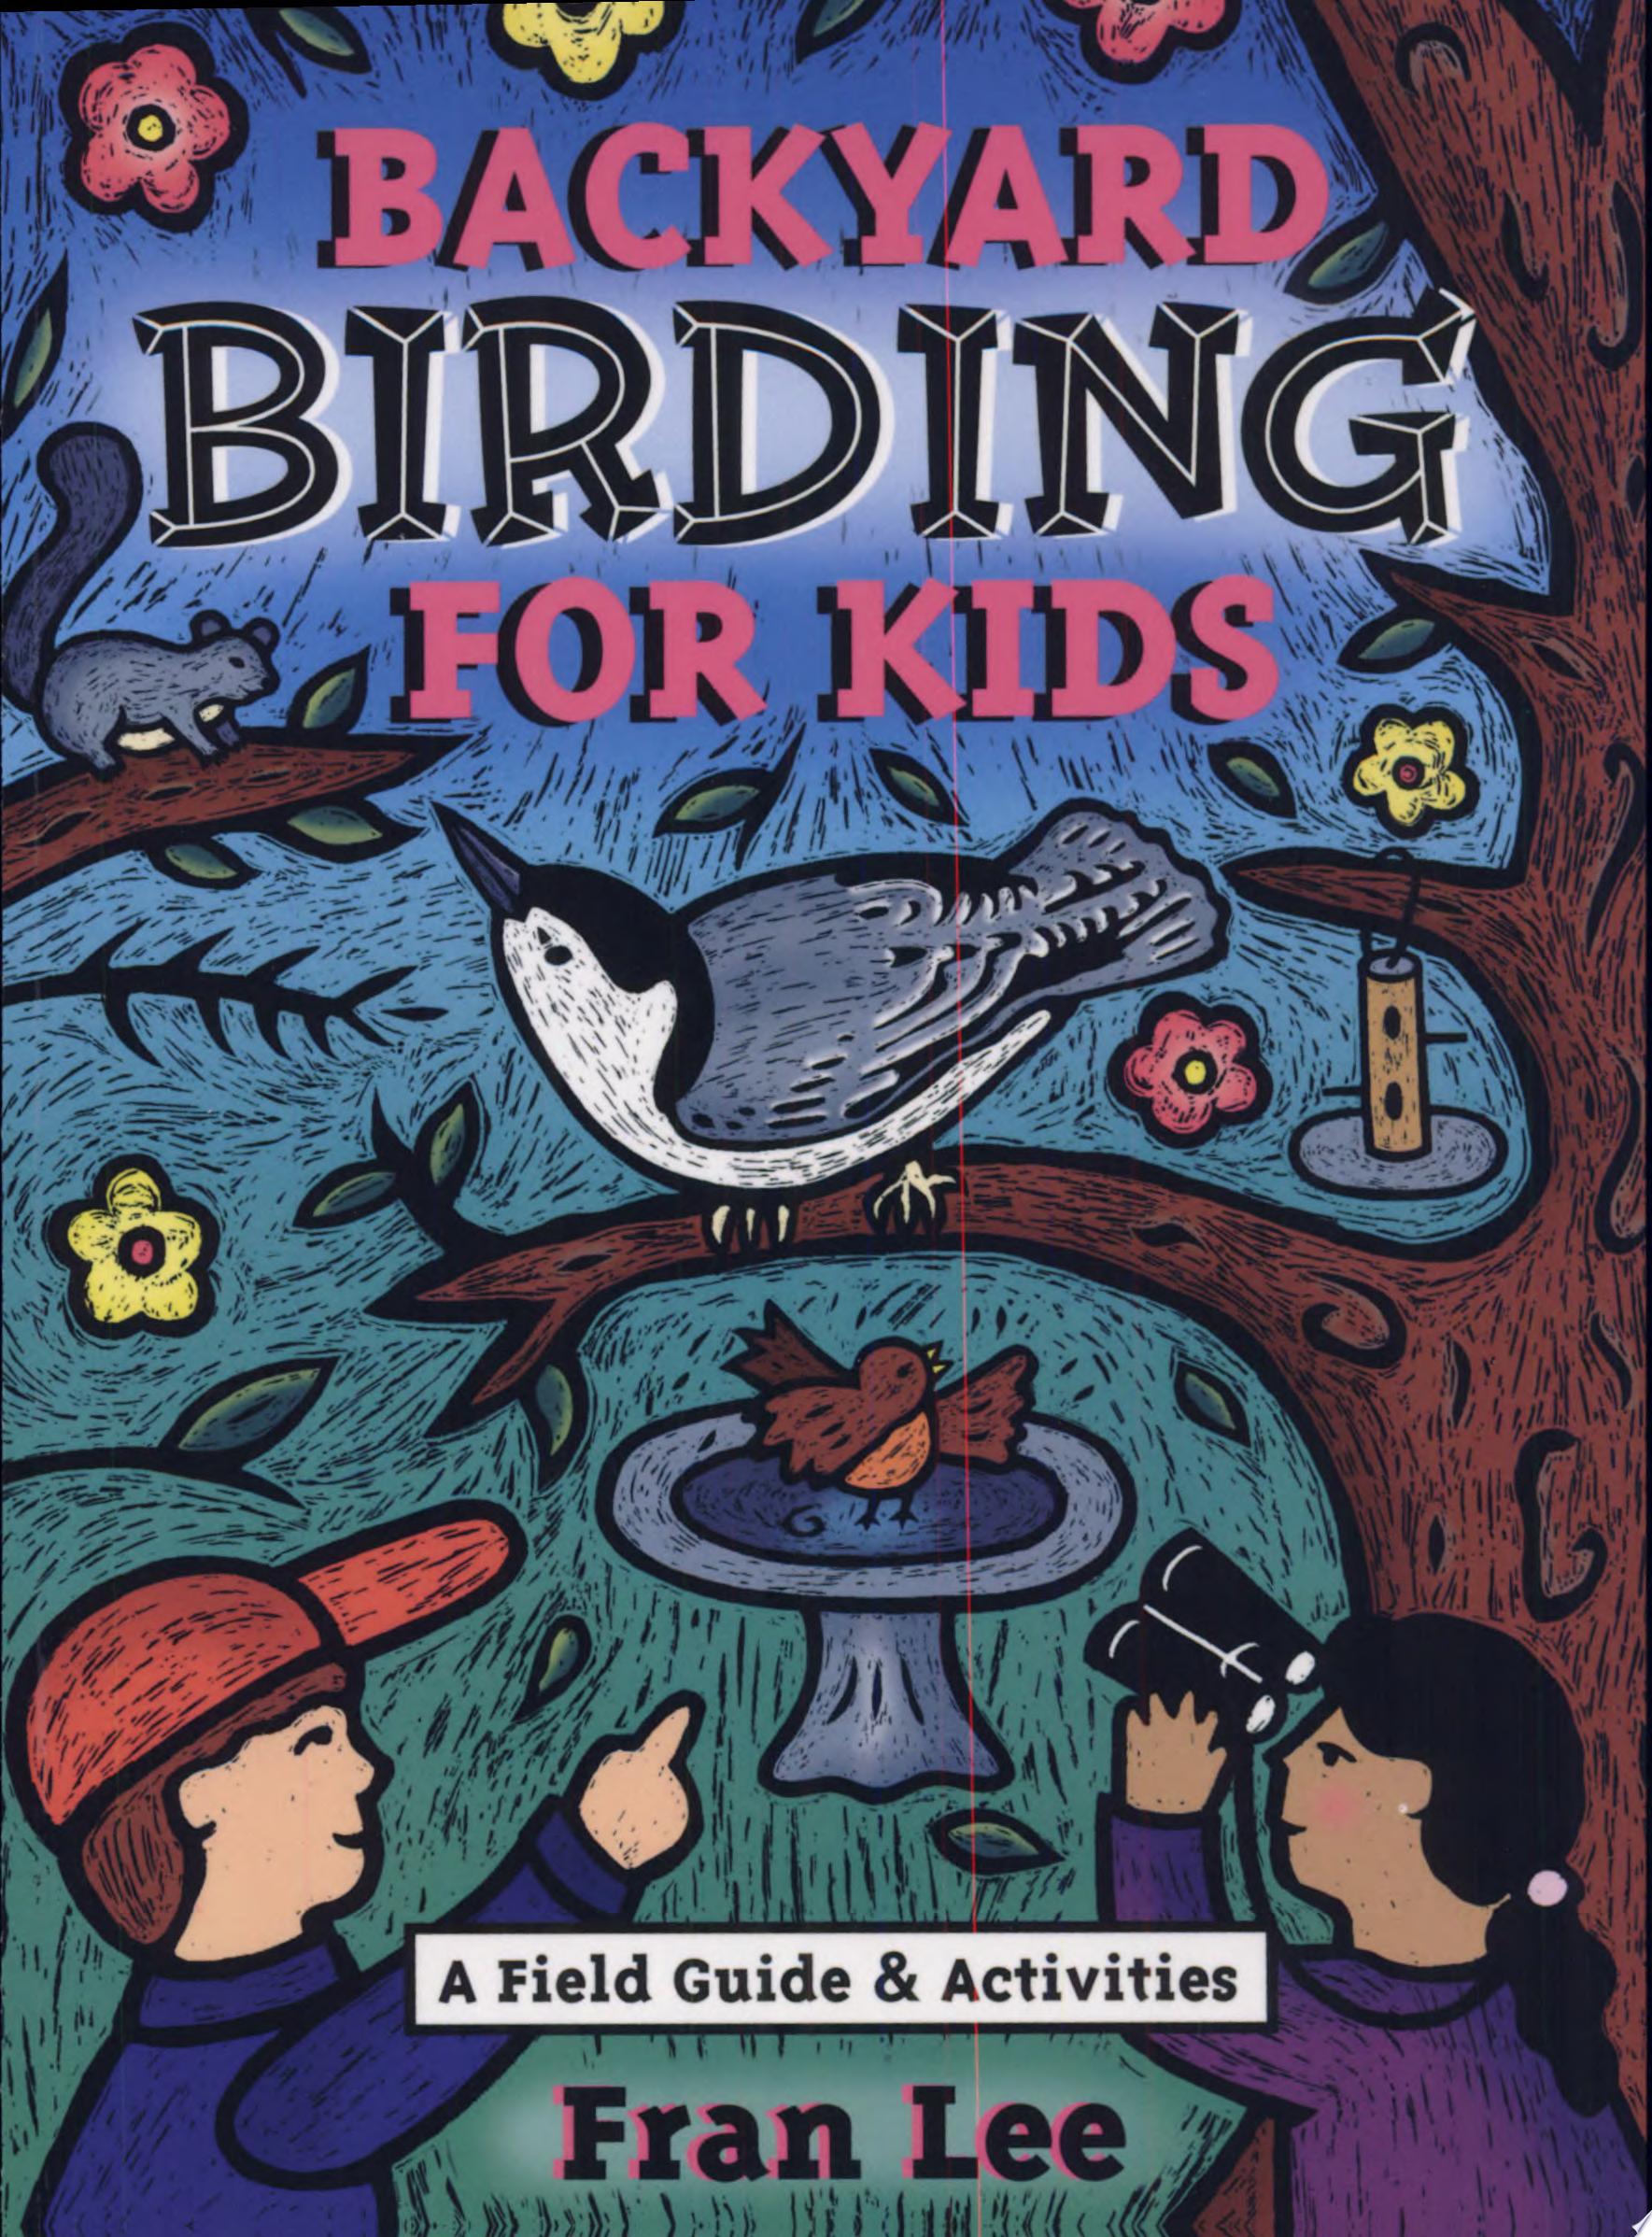 Image for "Backyard Birding for Kids"